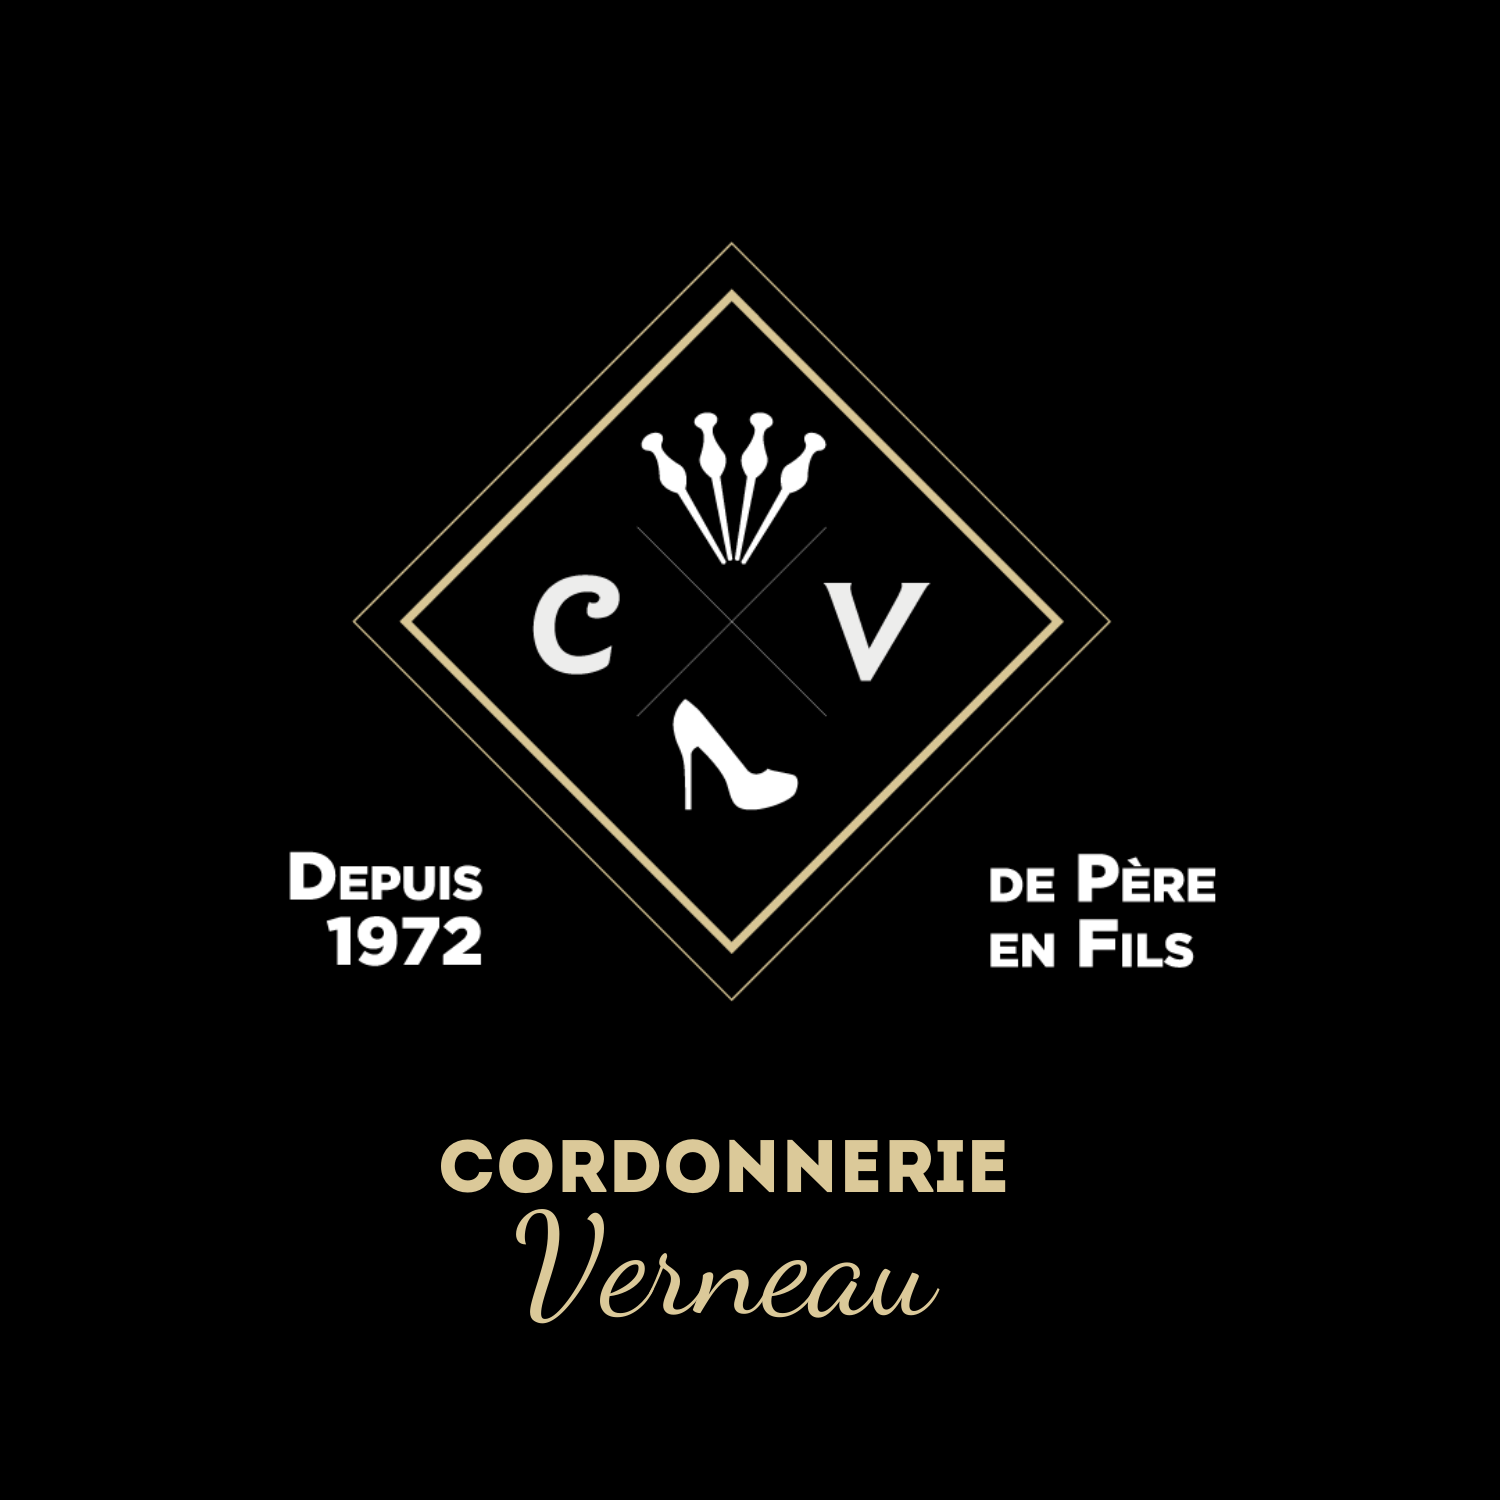 La cordonnerie - Cordonnerie Verneau